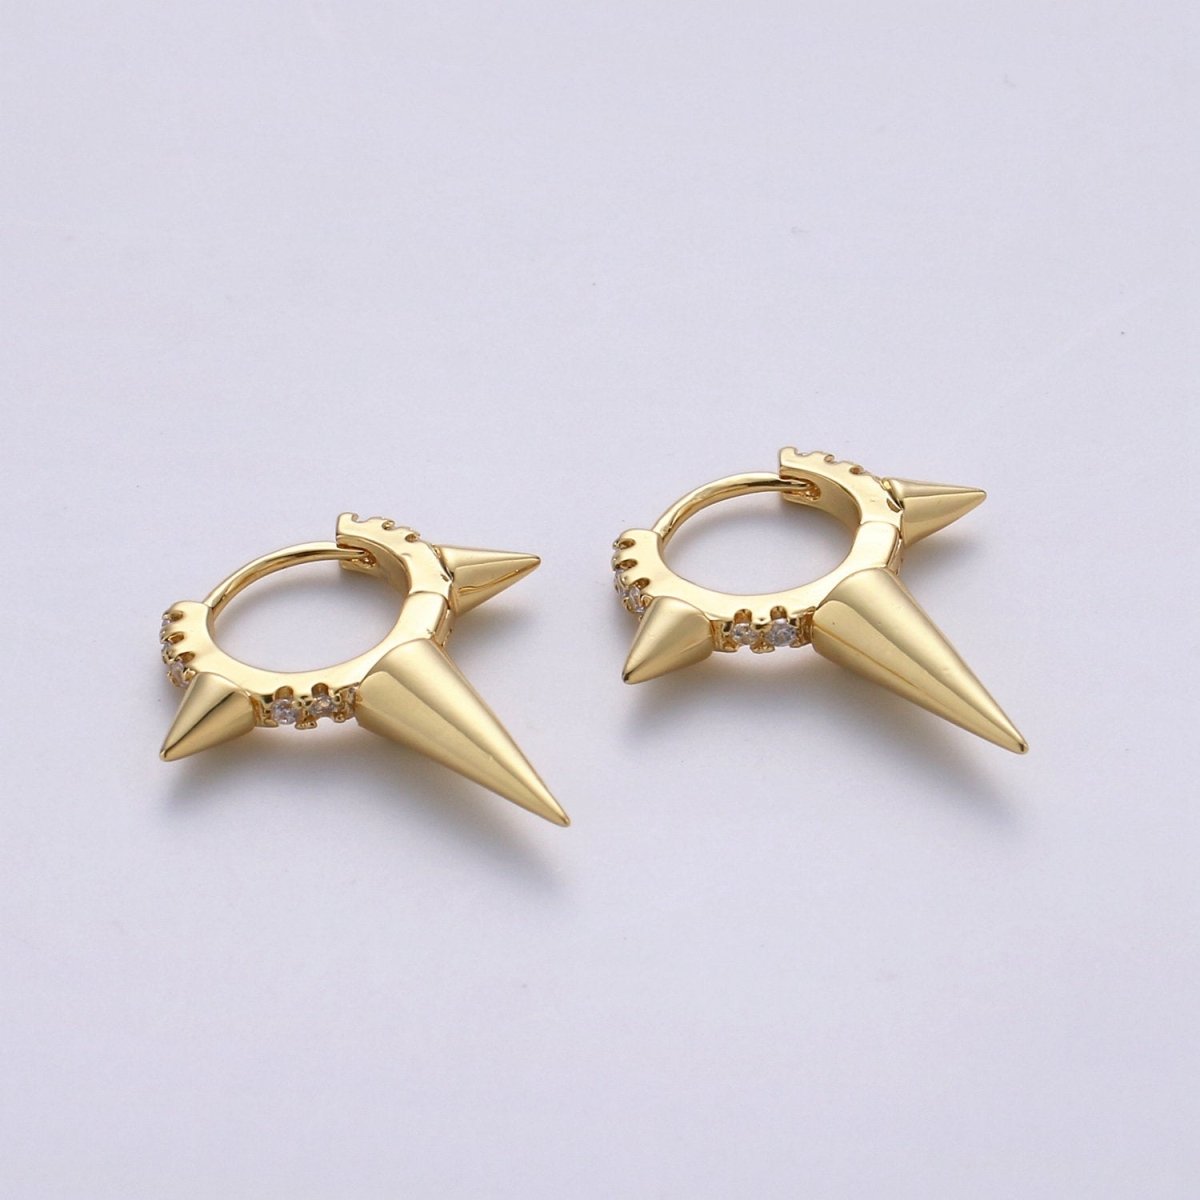 Gold Spiky Earrings, Spike Hoop Earrings, Dainty Huggie Earrings, Minimalist Earring, Small Gold Hoops Earring, Dainty Drop Earring K-708 - DLUXCA